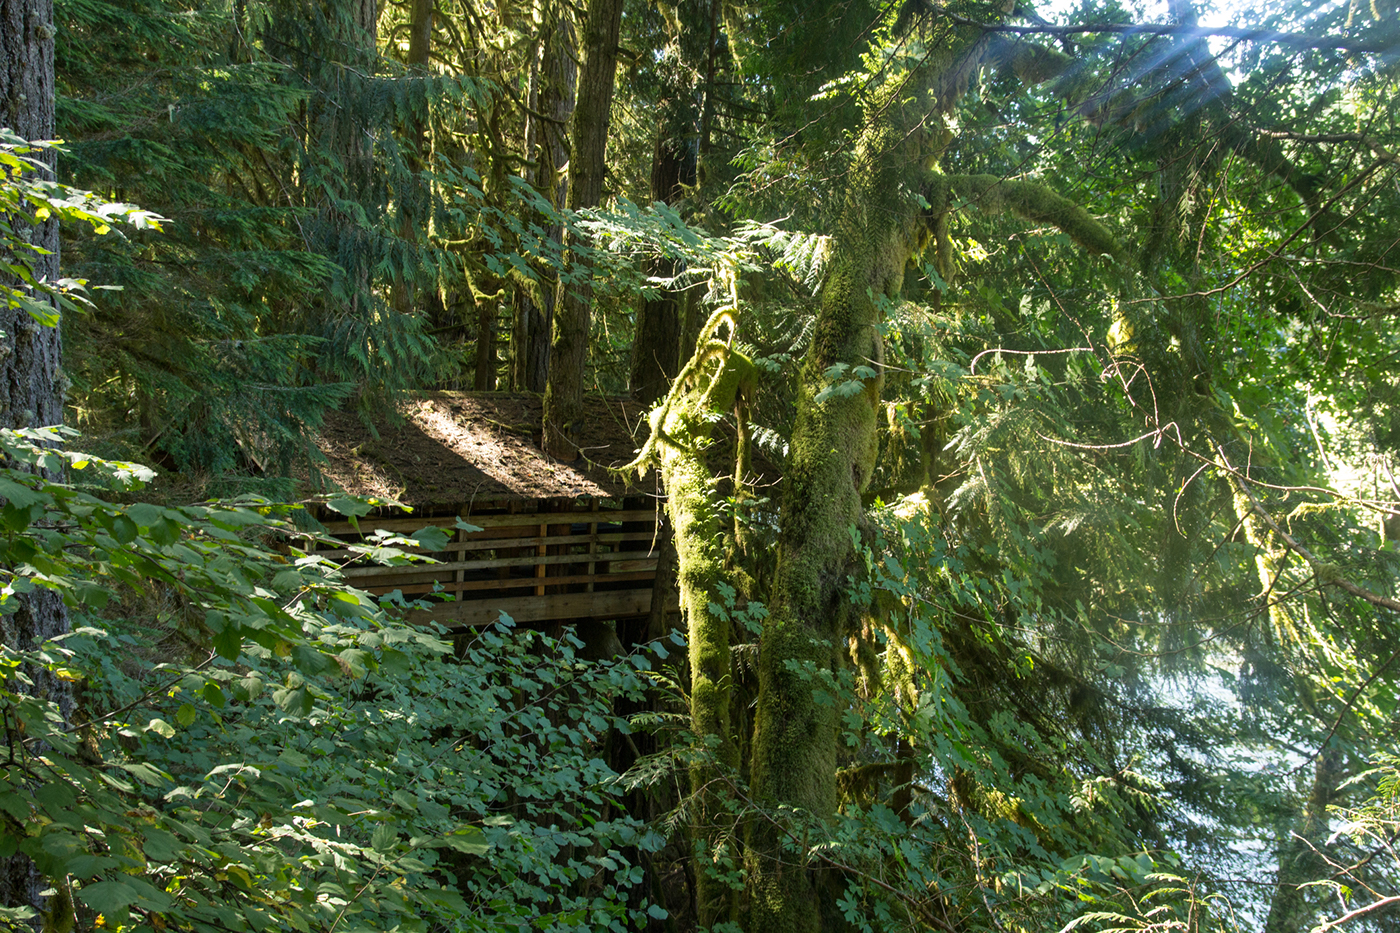 Oregon Sandy OR Ashland OR Nature landscapes tree house river rocks